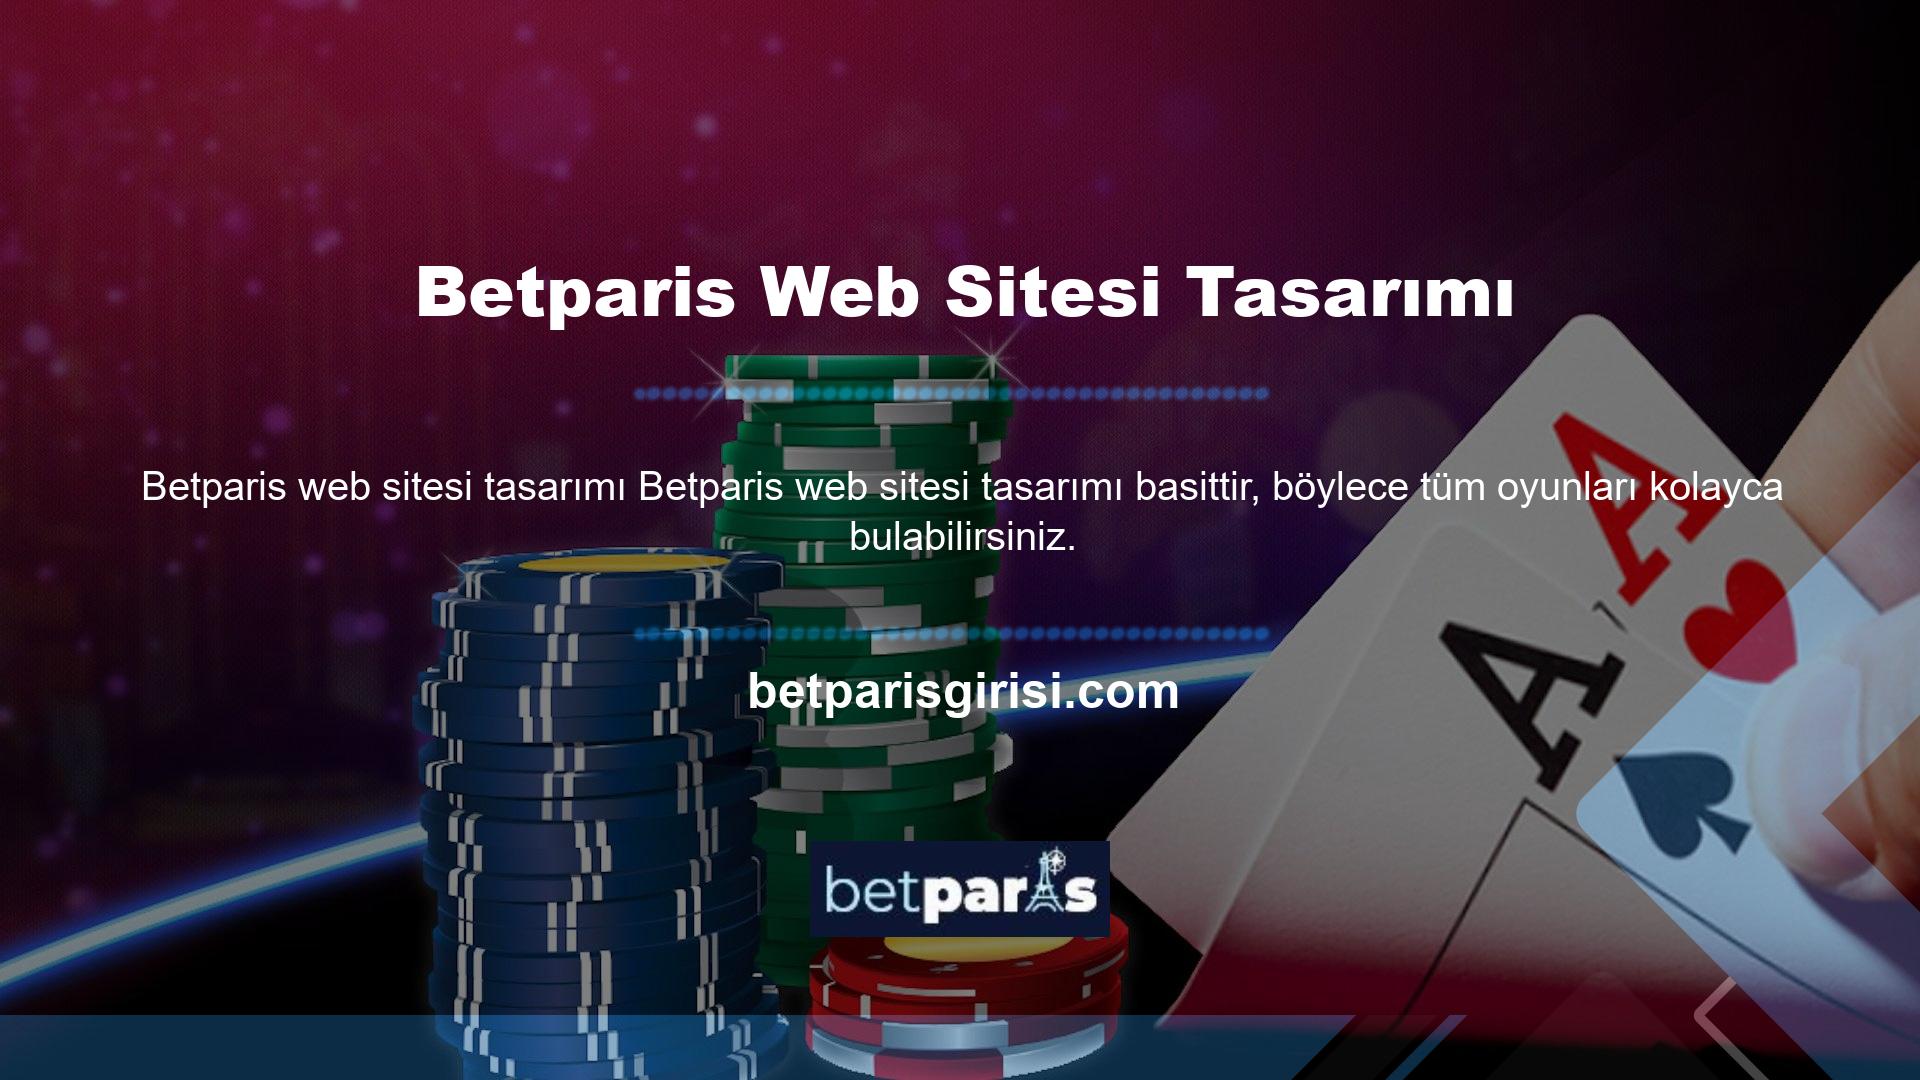 Online bahis sektörünün önde gelen sitelerinden biri olan Betparis sitesinde her zaman canlı bahis oyunları oynayabilirsiniz